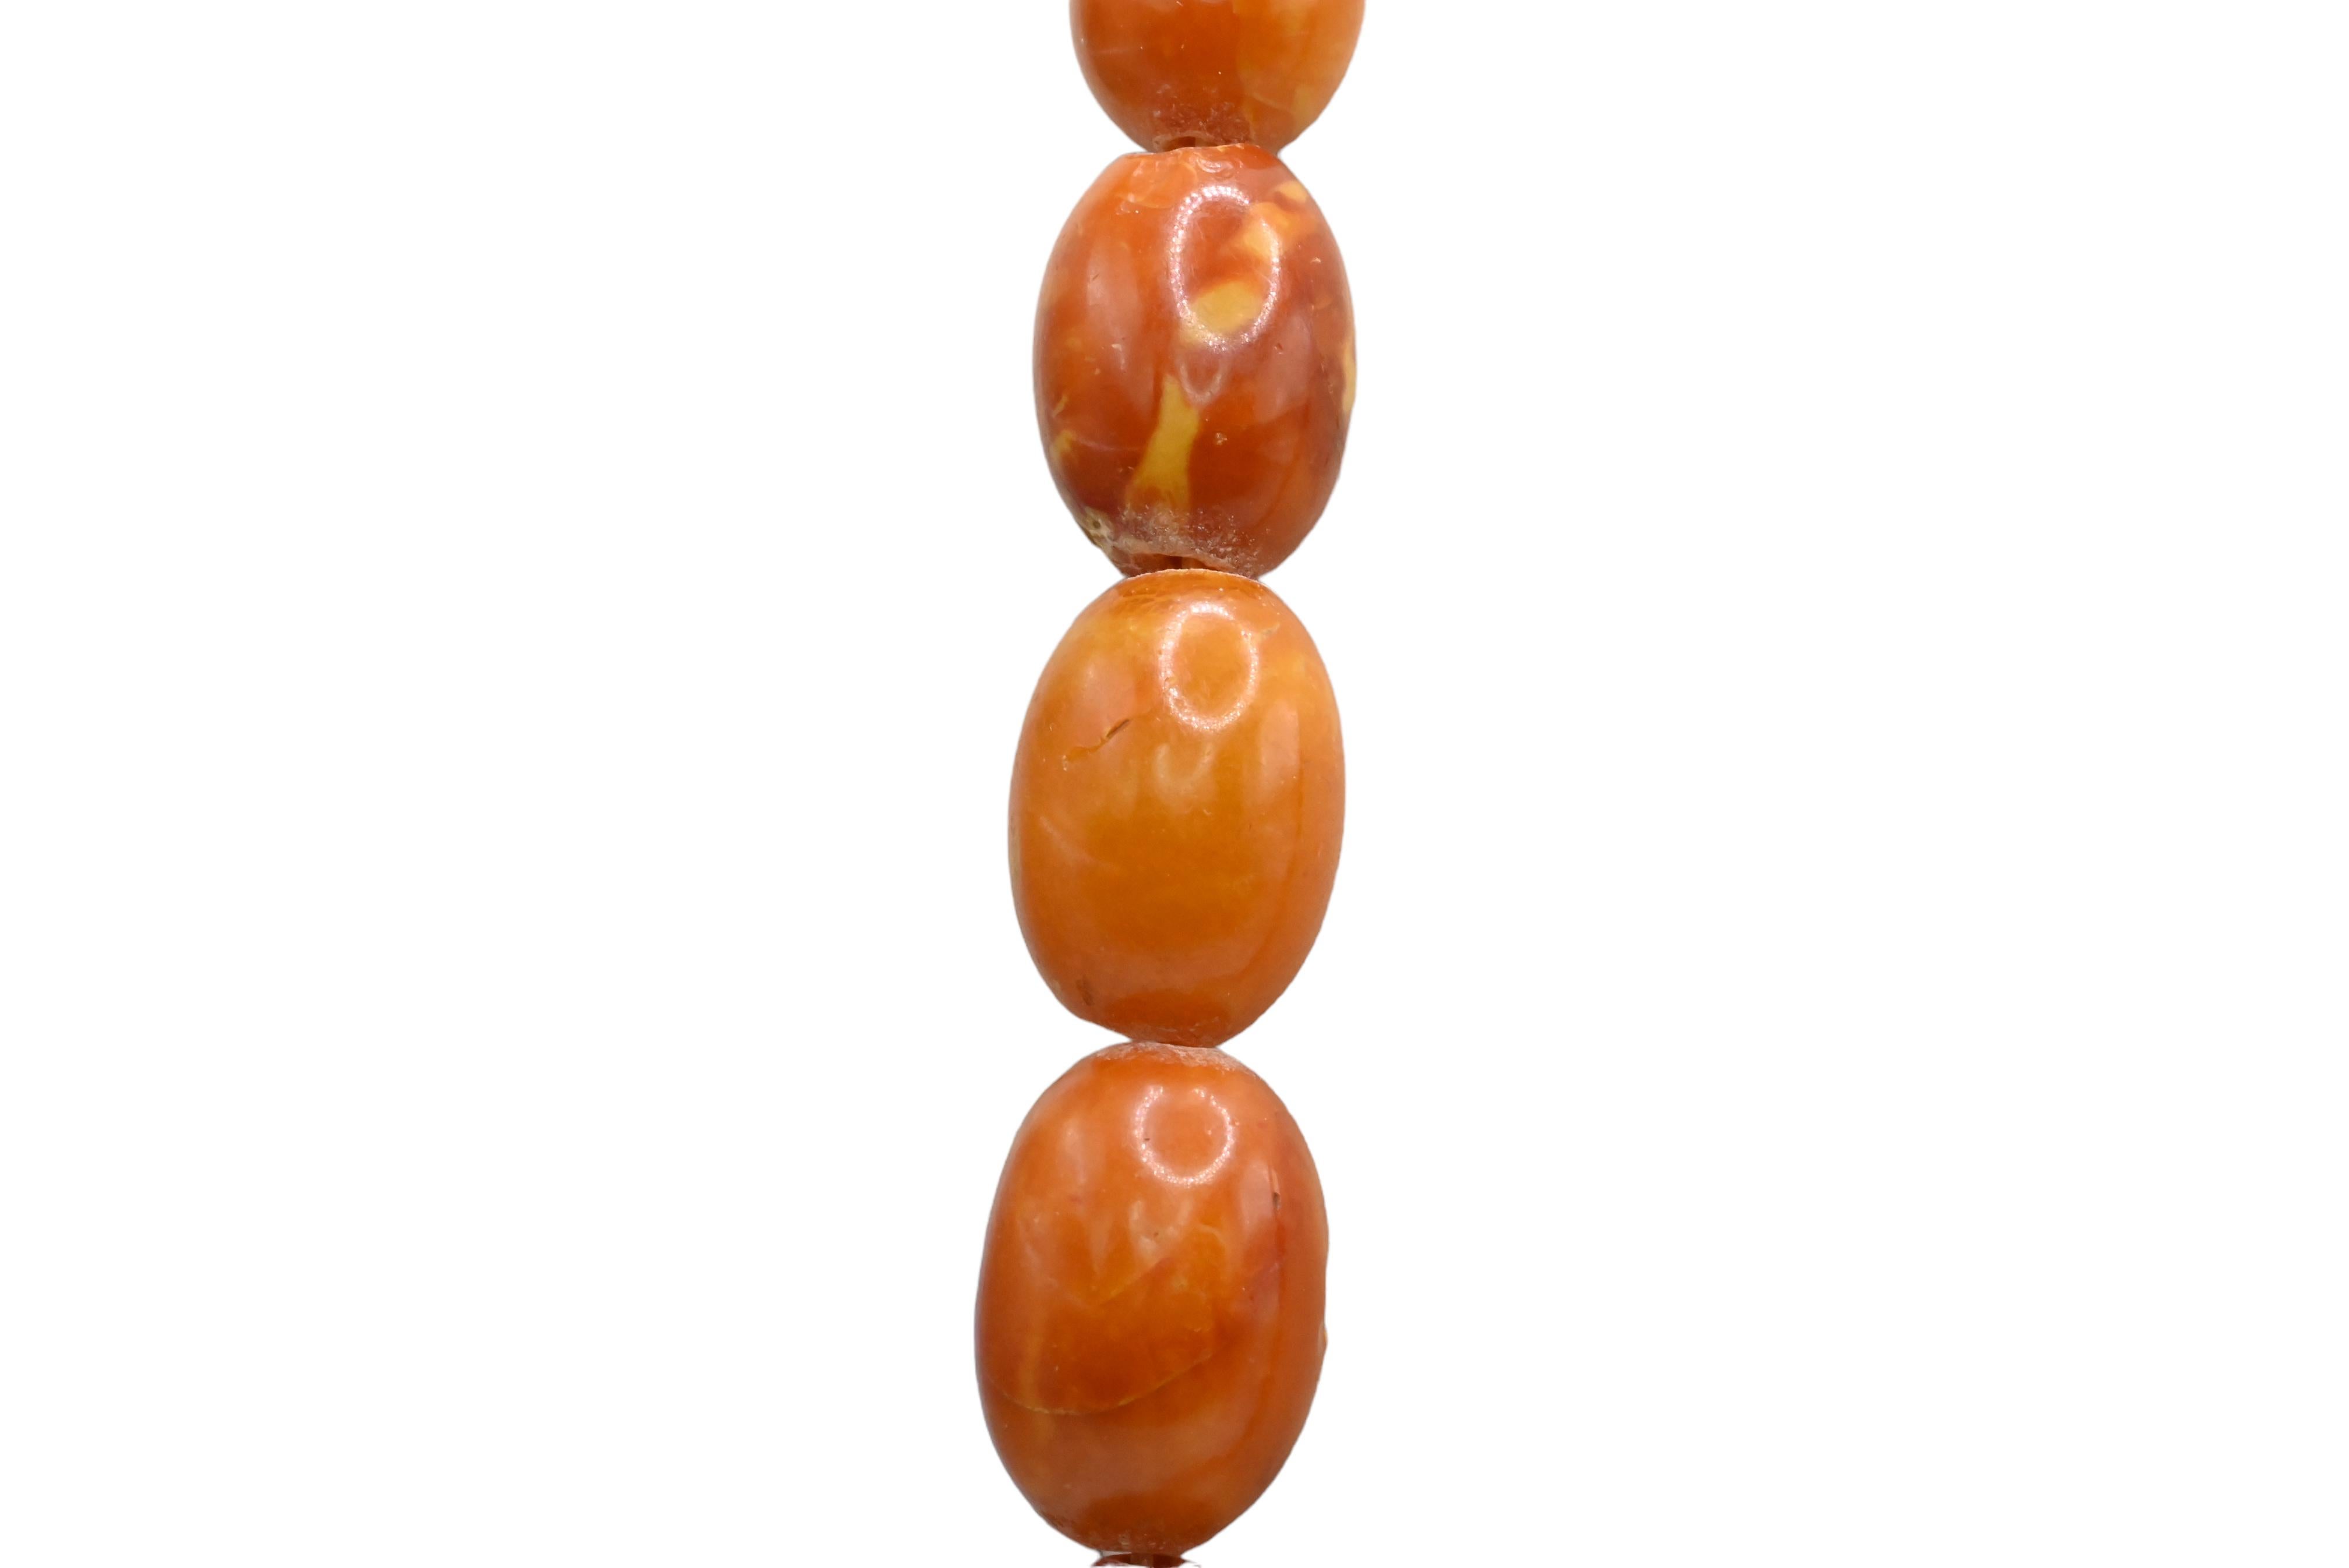 butterscotch amber beads